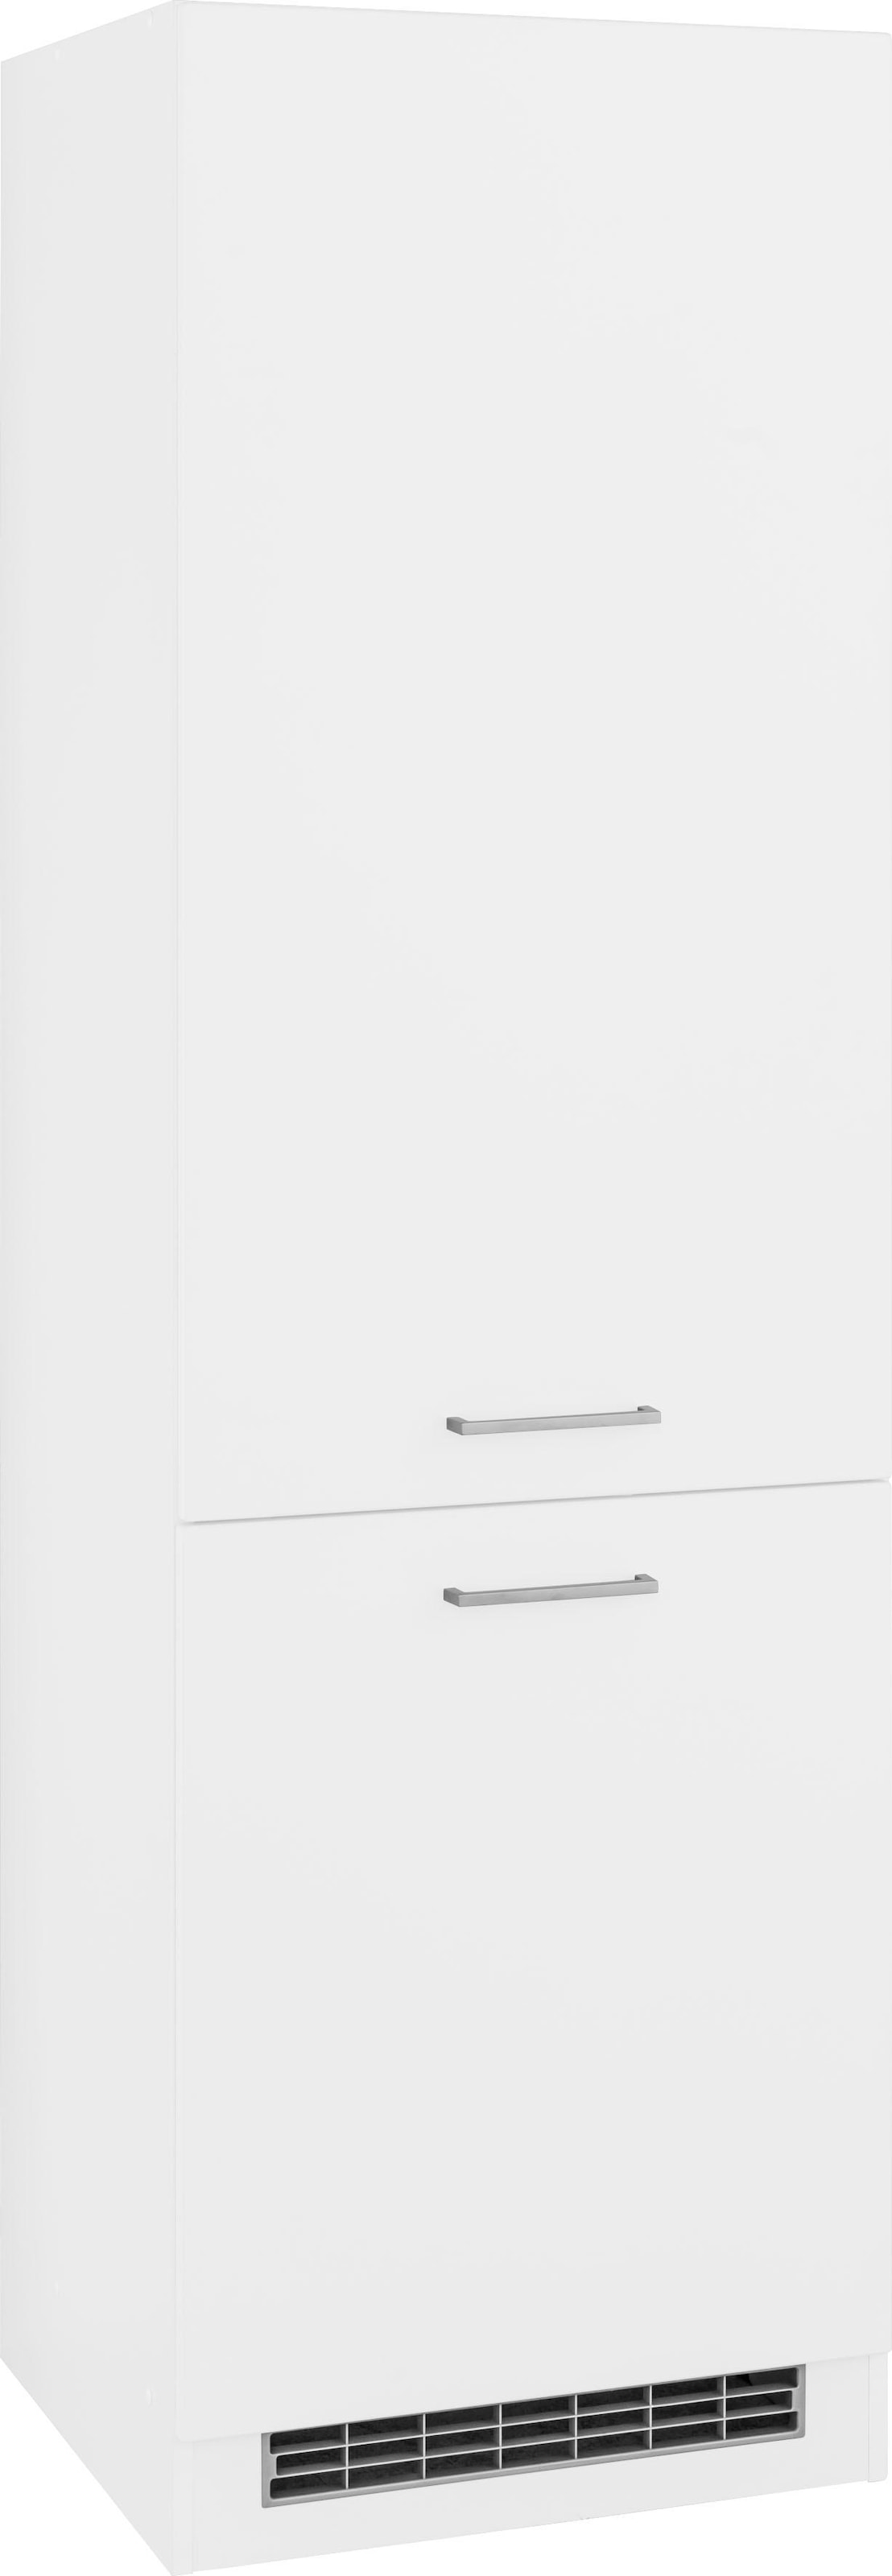 HELD MÖBEL Kühlumbauschrank »Visby«, für großen Kühlschrank oder Kühl/Gefrierkombi, Nischenmaß 178 cm